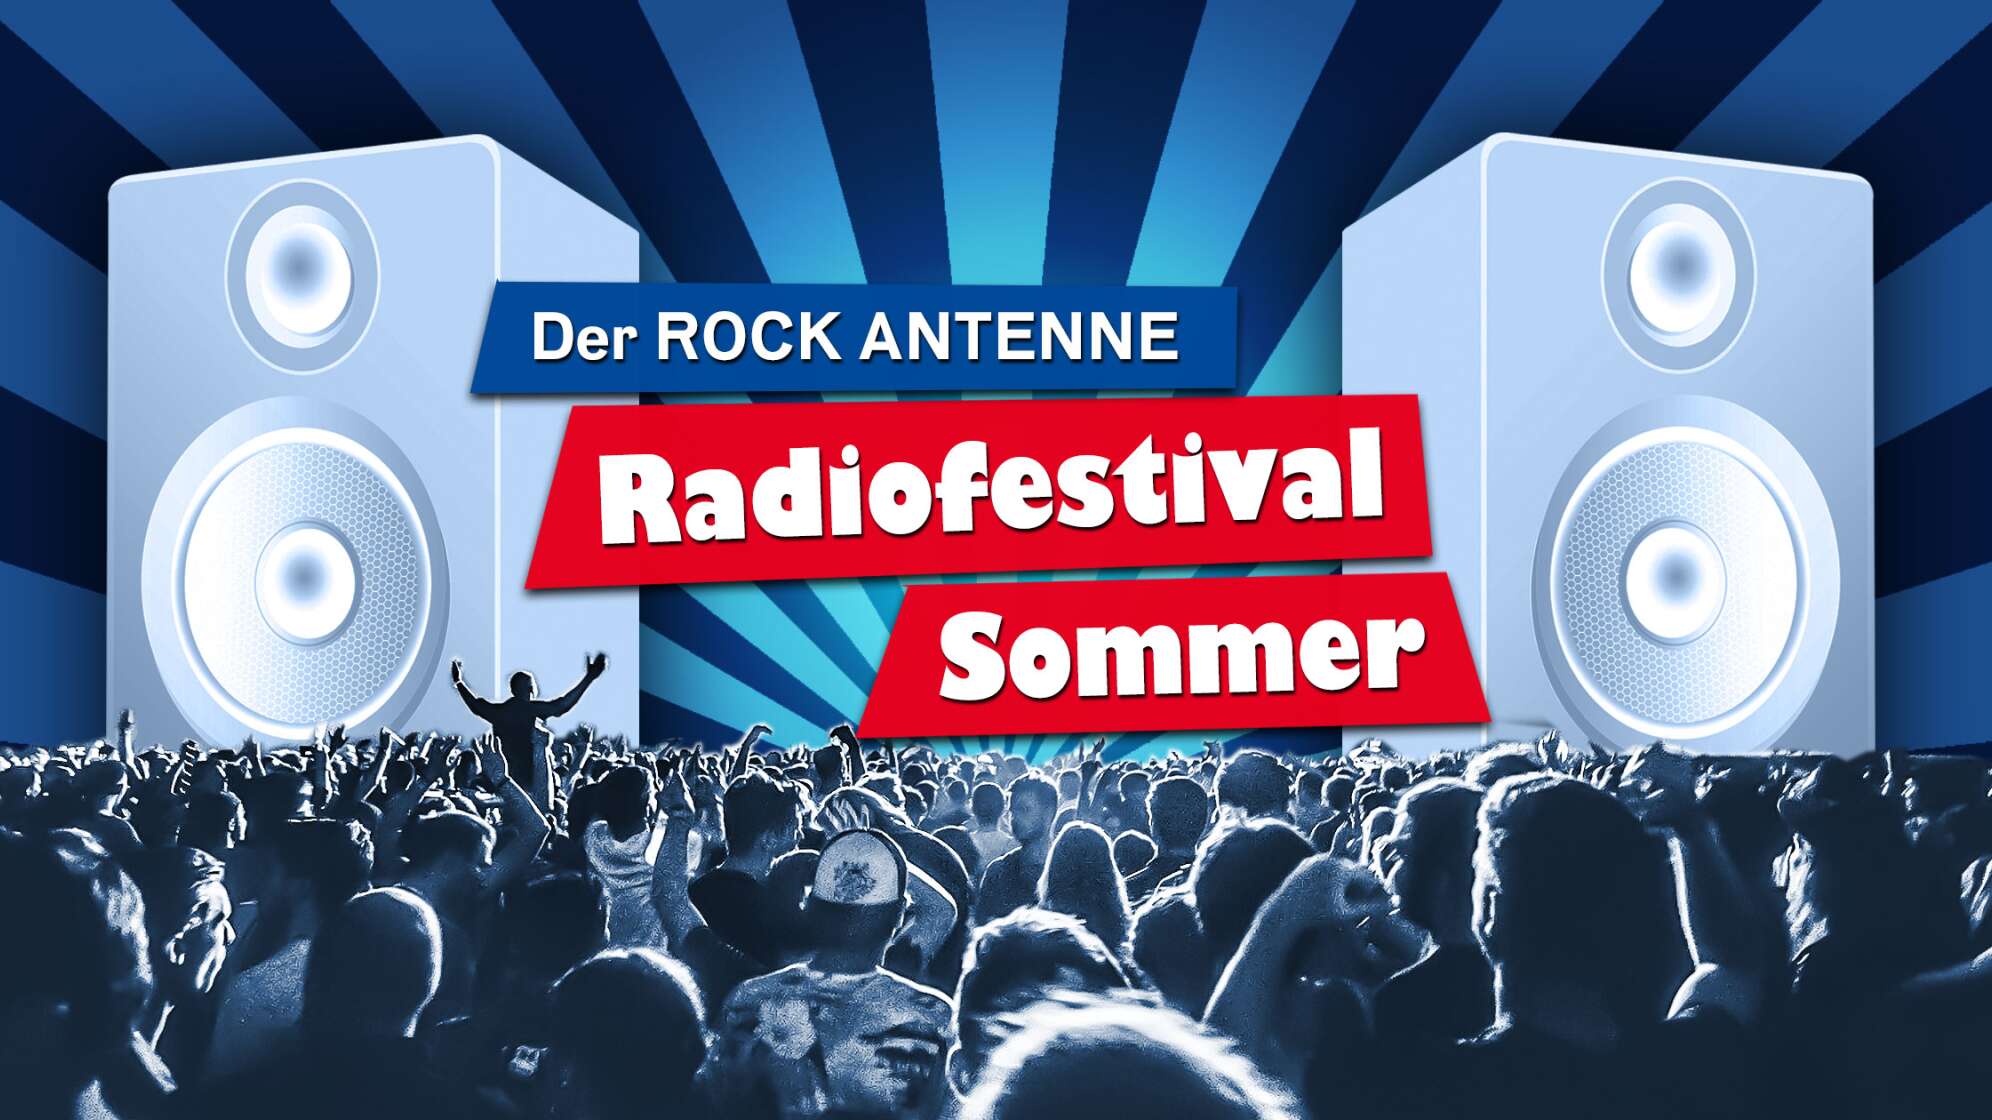 Die Aktionsgrafik des "ROCK ANTENNE Radiofestival Sommer" - eine animierte Grafik mit Konzertbesuchern, großen Lautsprechern und Strahlen im Hintergrund